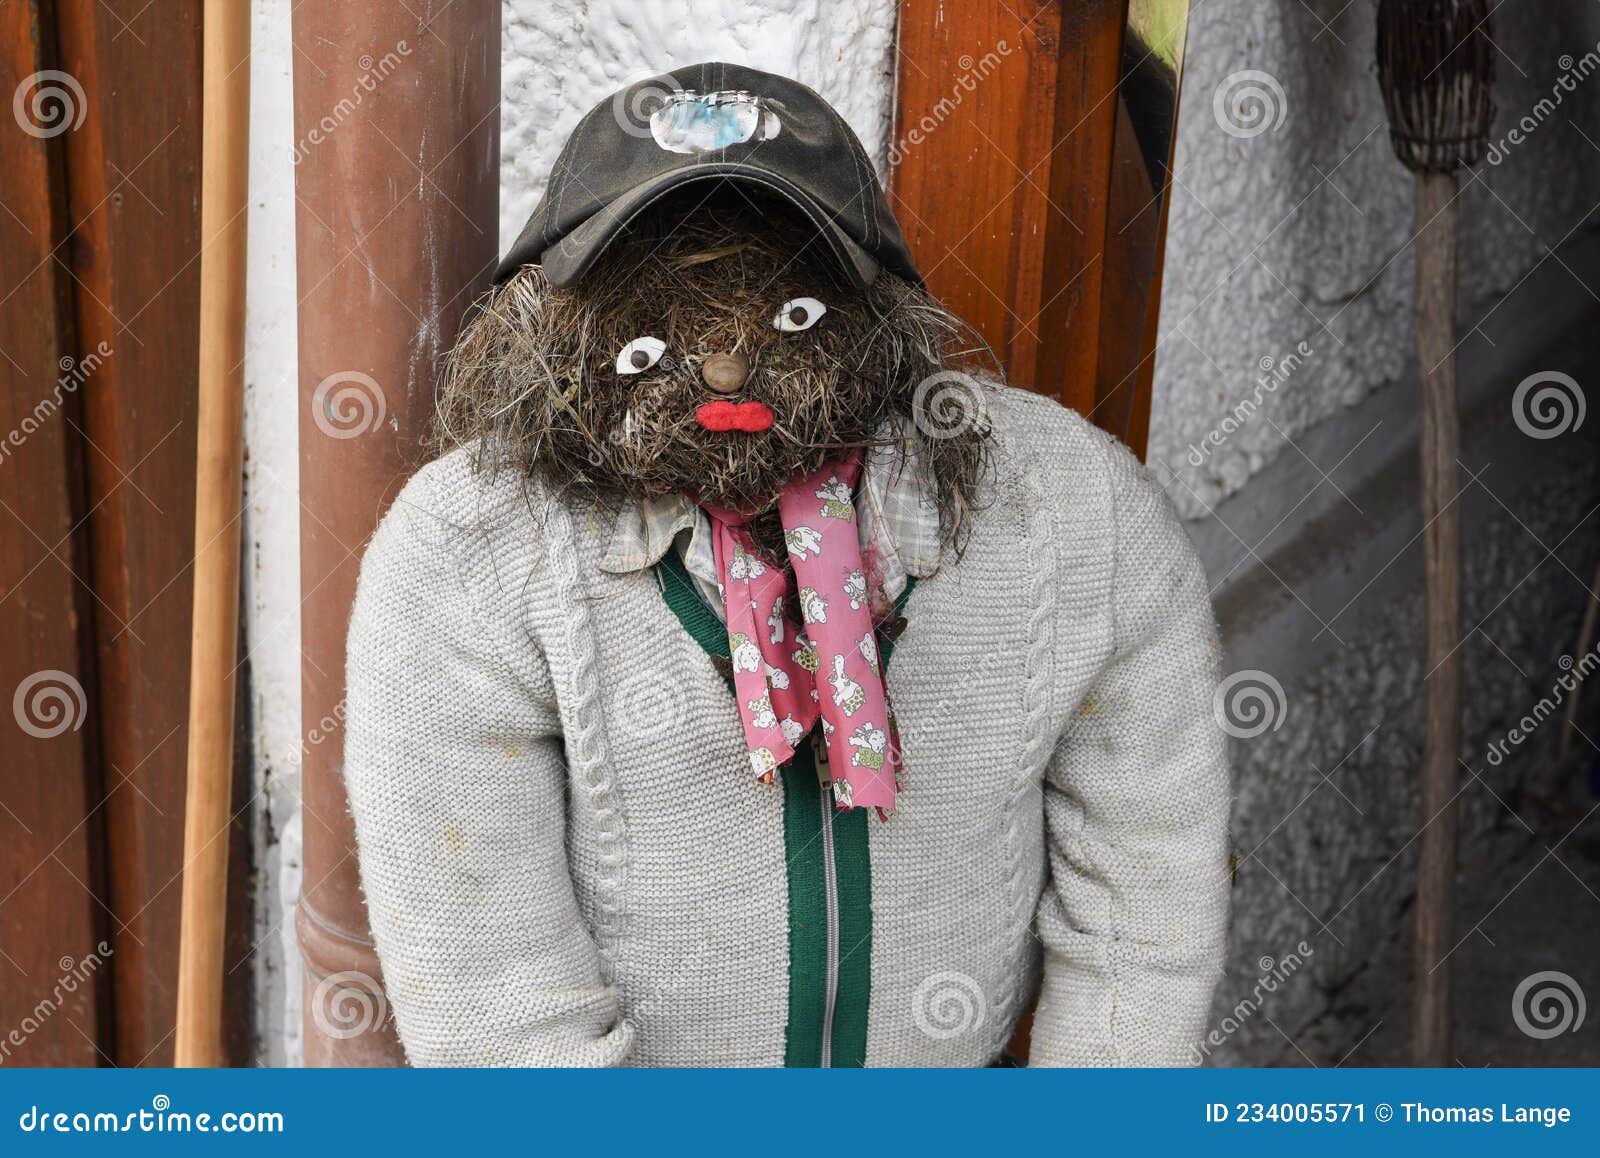 ένας άνδρας φτιαγμένος από άχυρο με κάπα και πλεκτό πανωφόρι και μια αρχικά και διακοσμητική αδέσποτη κούκλα